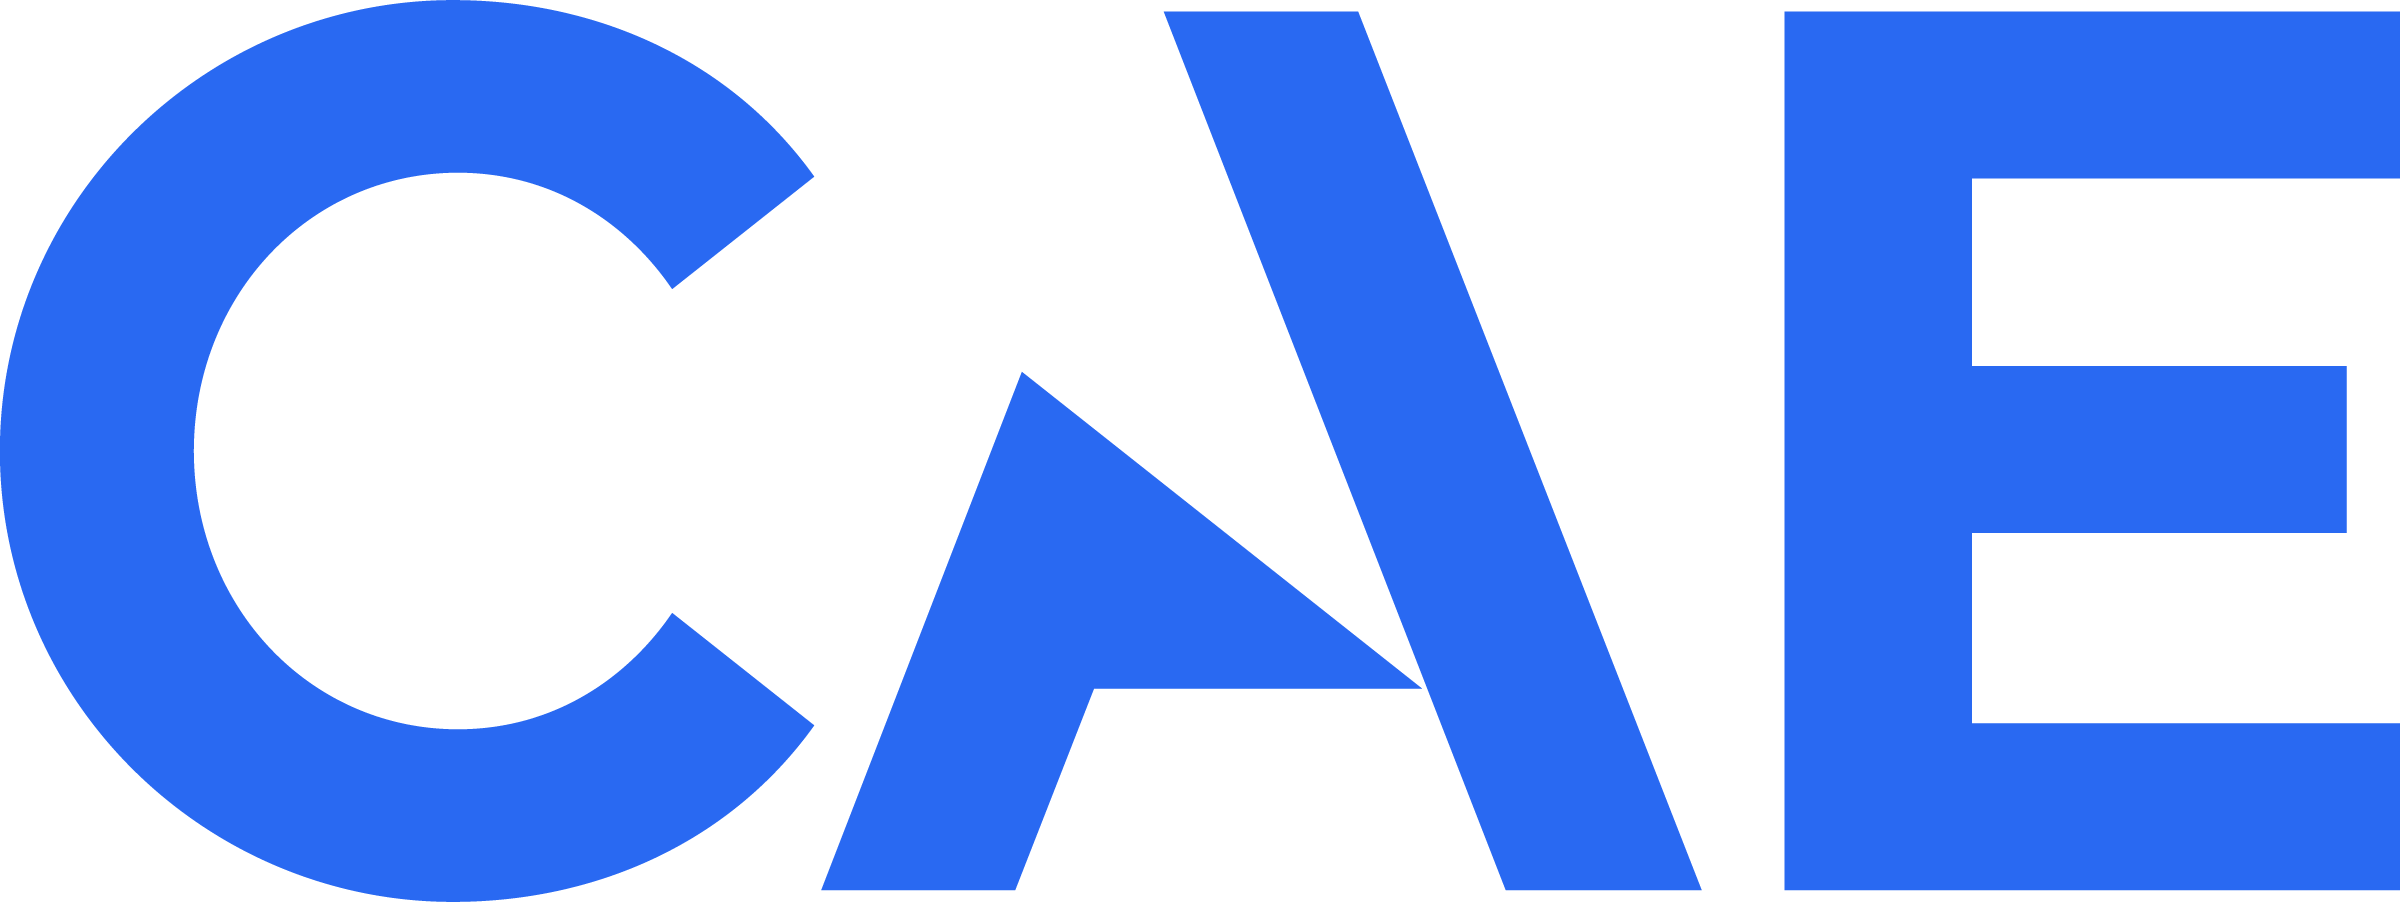 Full Stack Developer logo